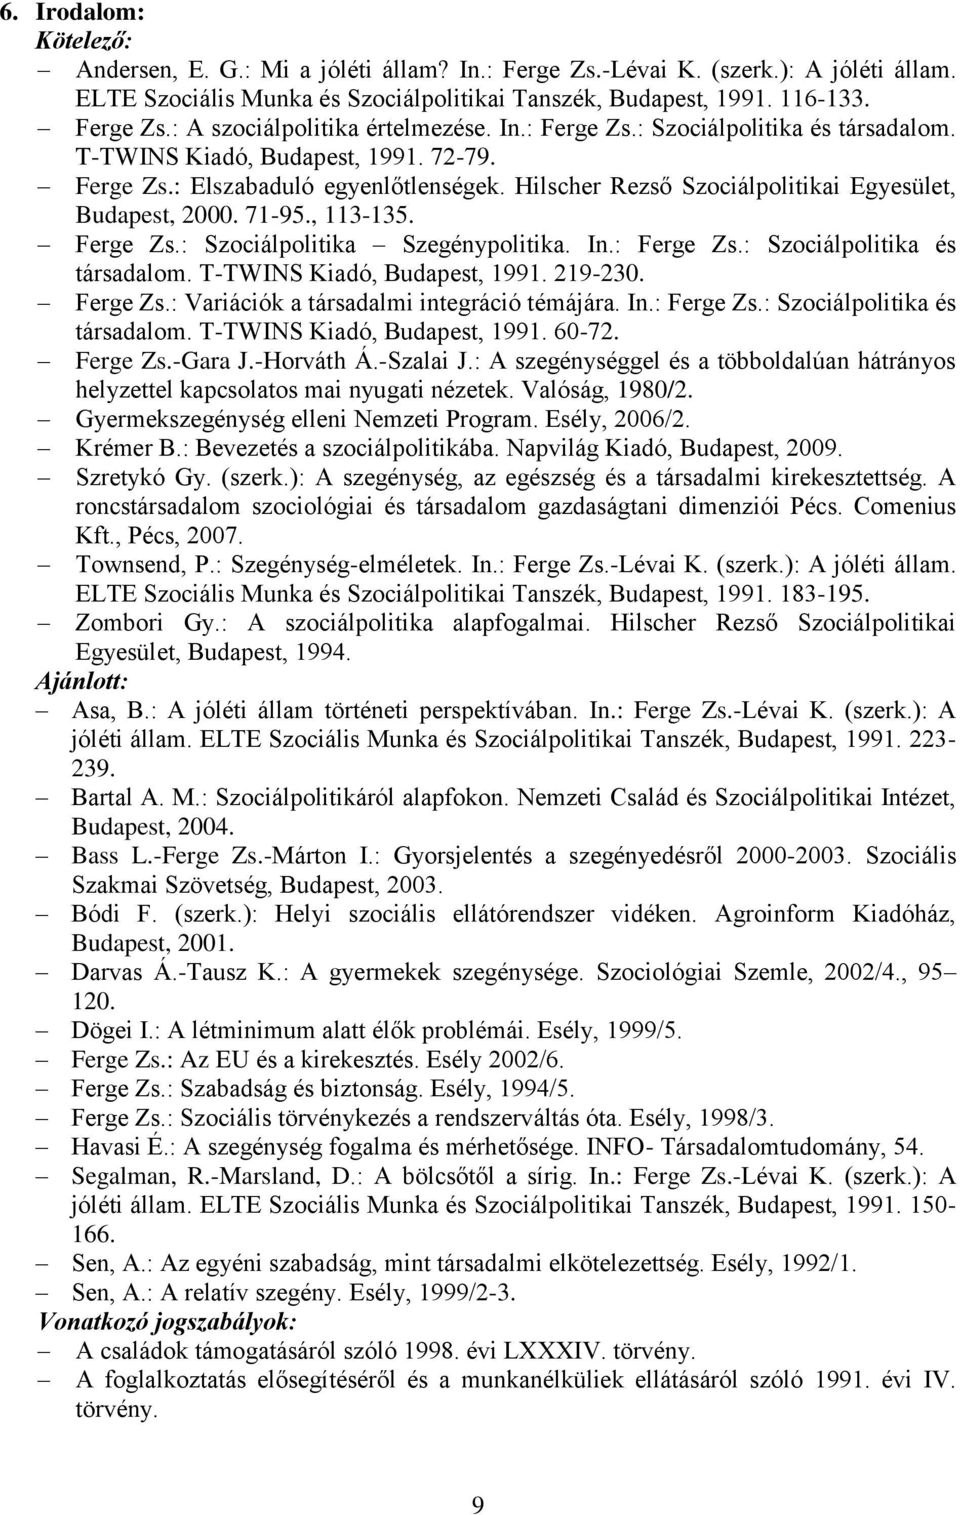 , 113-135. Ferge Zs.: Szociálpolitika Szegénypolitika. In.: Ferge Zs.: Szociálpolitika és társadalom. T-TWINS Kiadó, Budapest, 1991. 219-230. Ferge Zs.: Variációk a társadalmi integráció témájára. In.: Ferge Zs.: Szociálpolitika és társadalom. T-TWINS Kiadó, Budapest, 1991. 60-72.